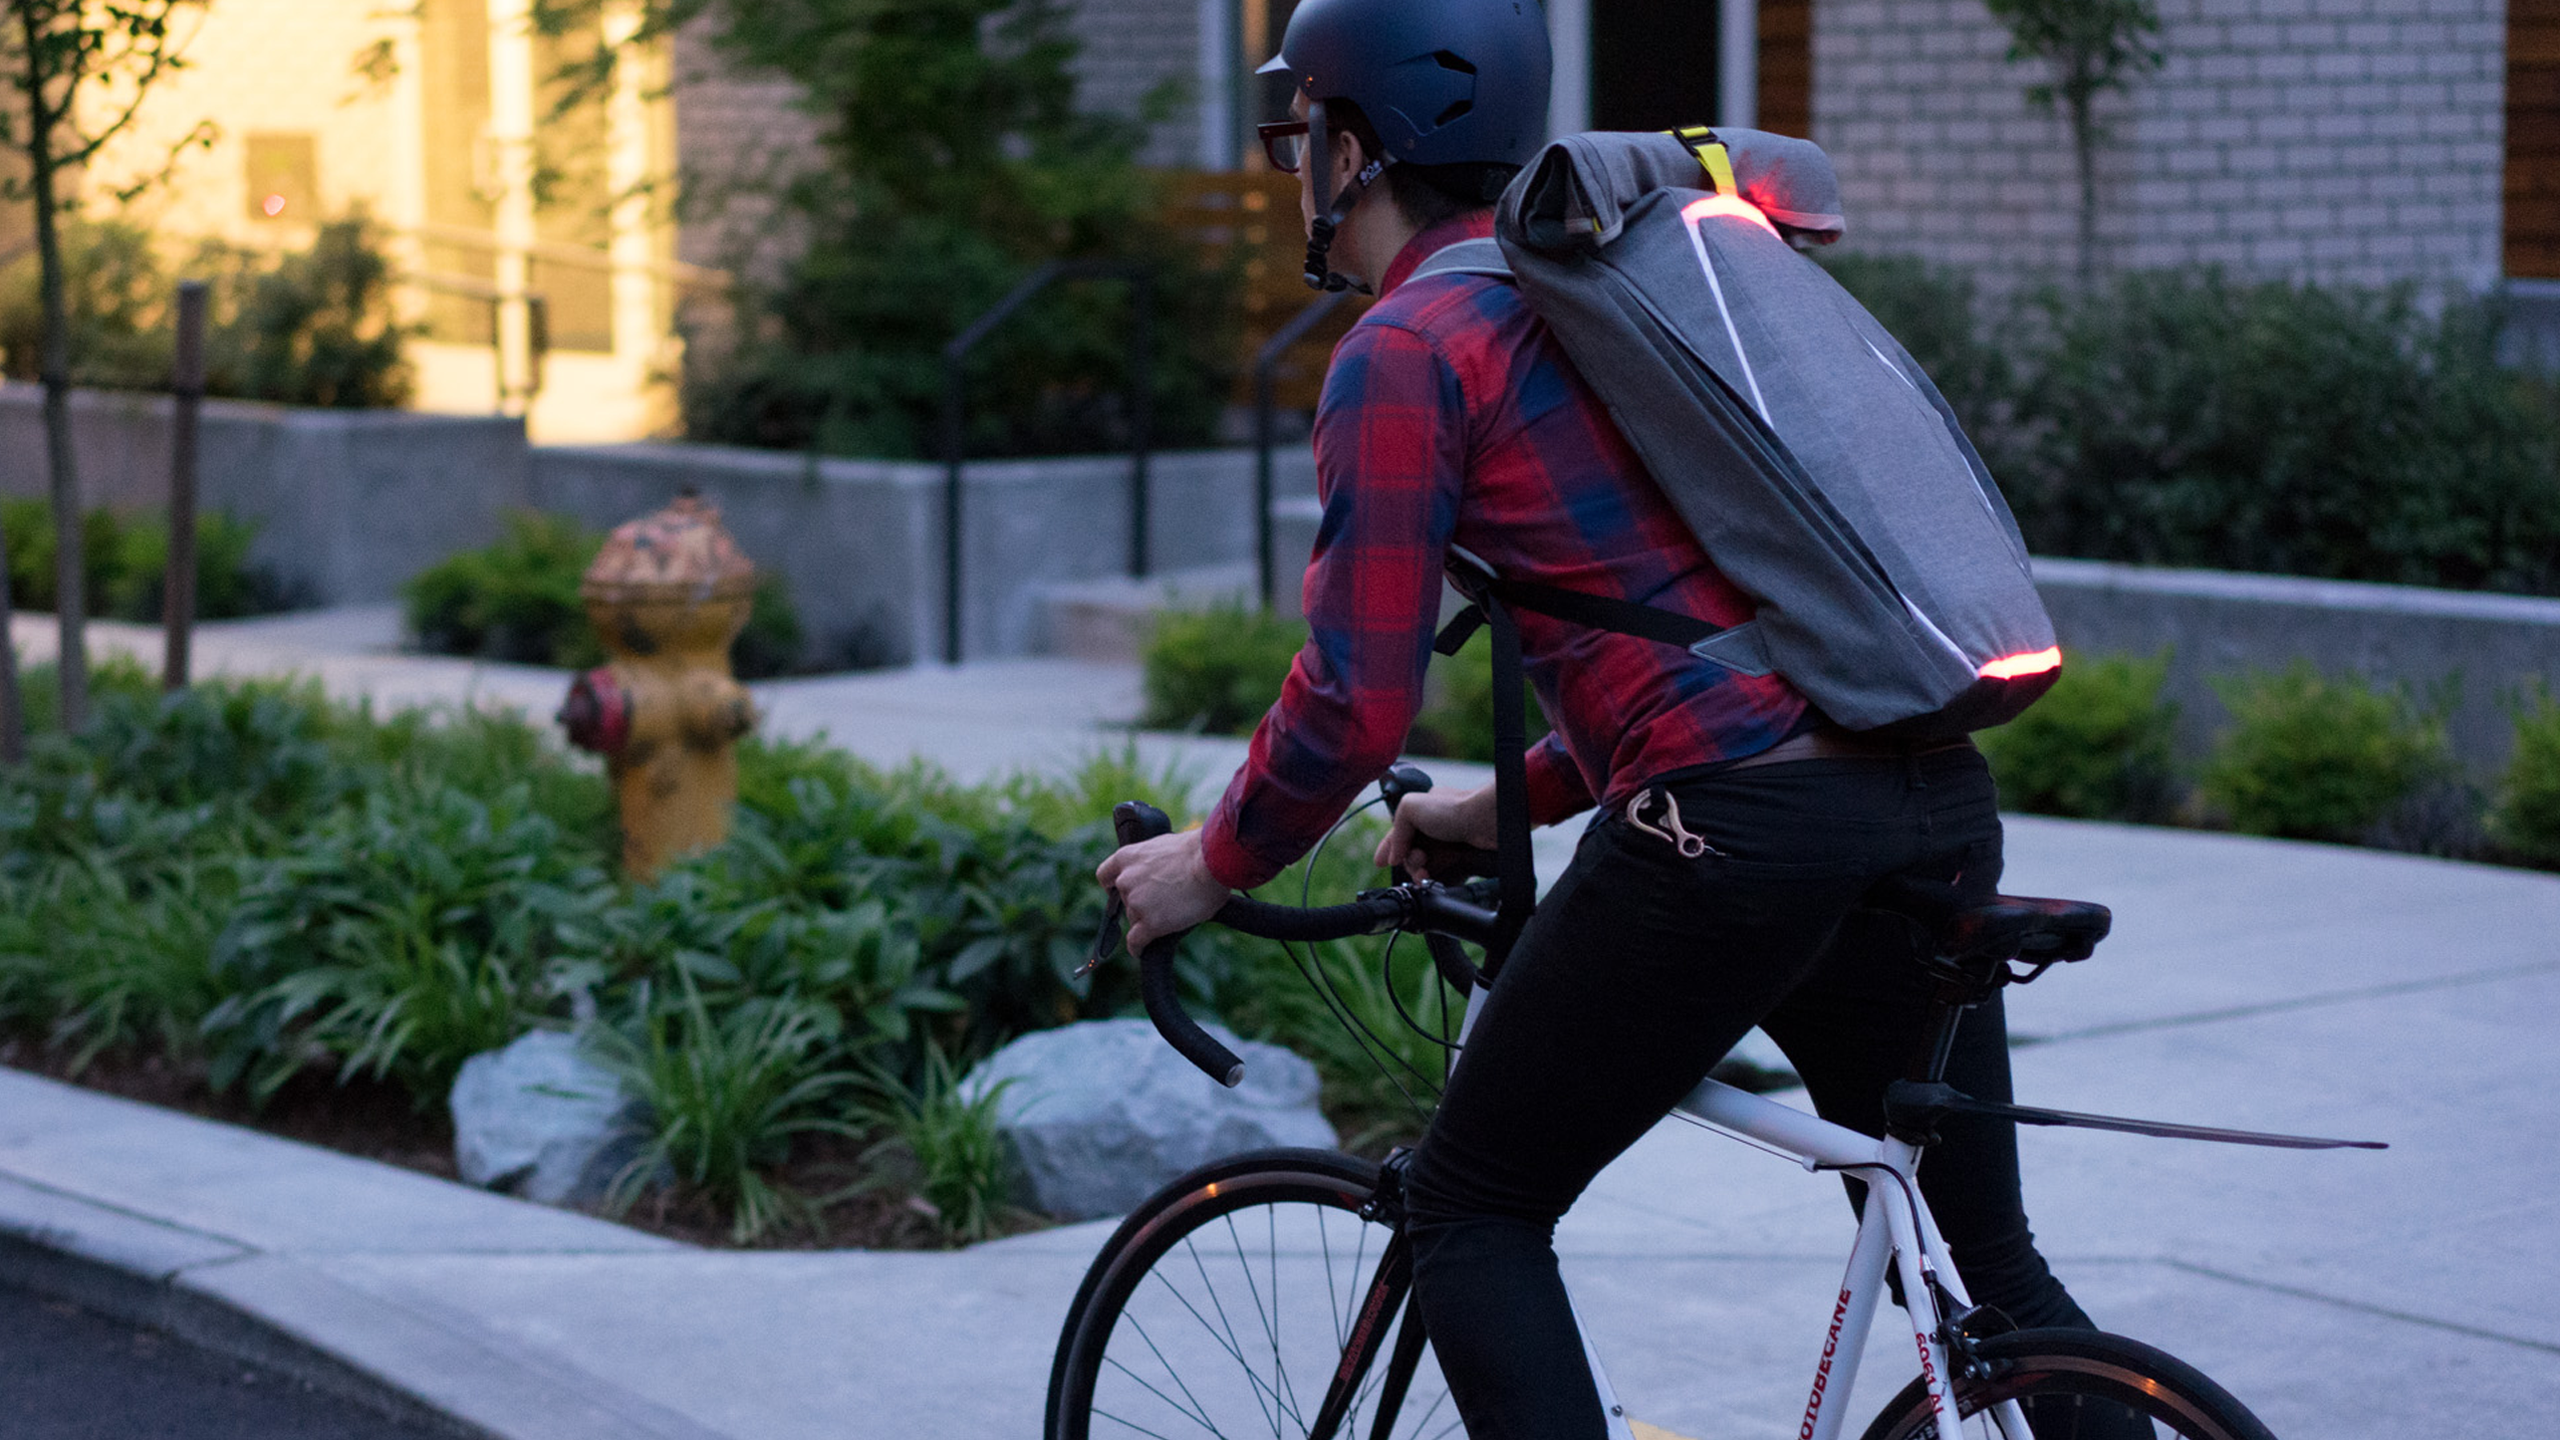 BrakePack smart backpack keeps bicyclists safe on the road